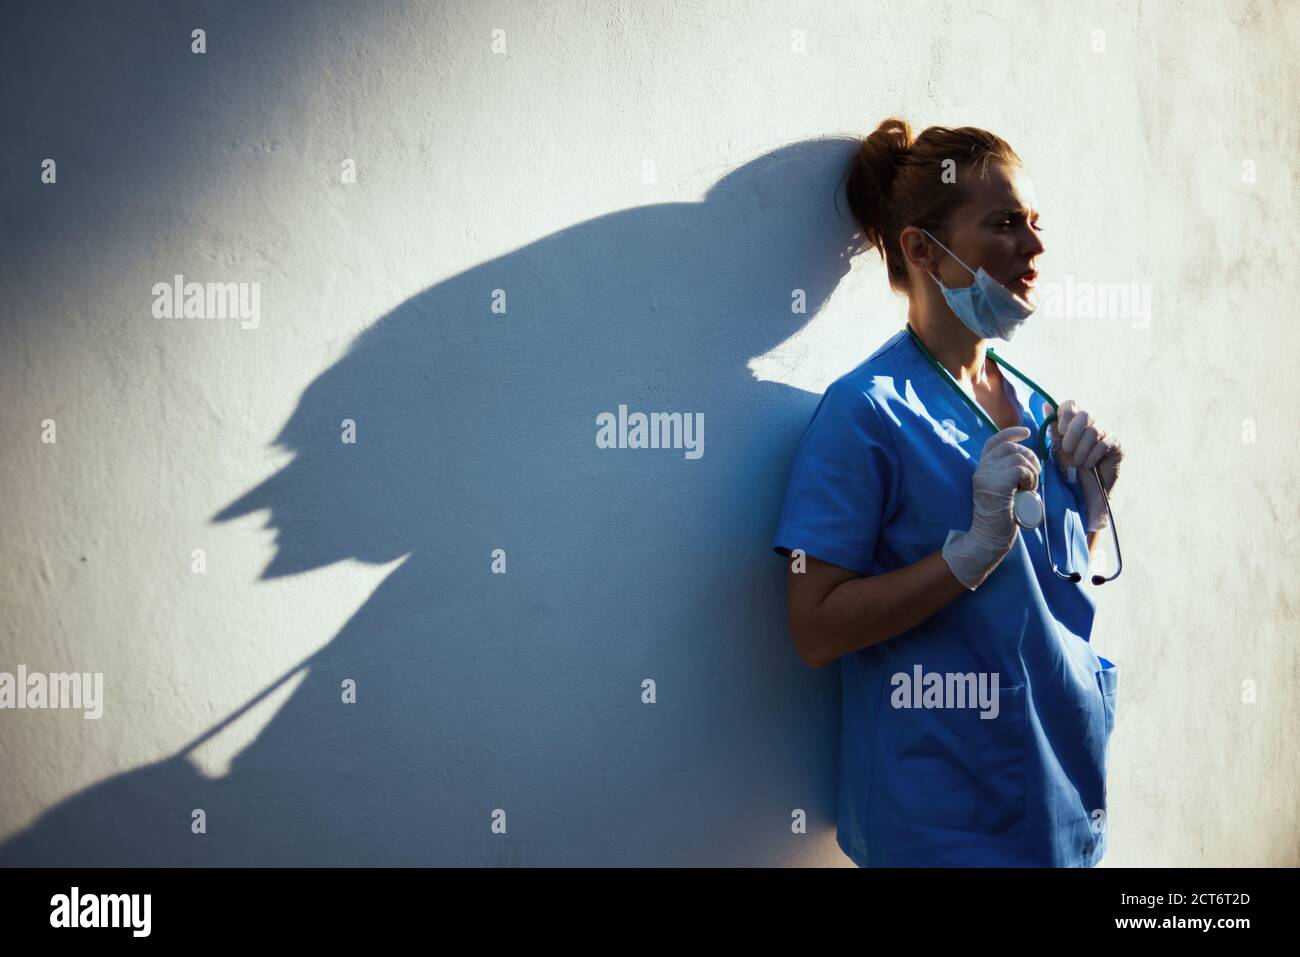 pandémie covid-19. femme médecin moderne fatiguée en exfoliant avec stéthoscope, masque médical et gants en caoutchouc à l'extérieur près du mur. Banque D'Images